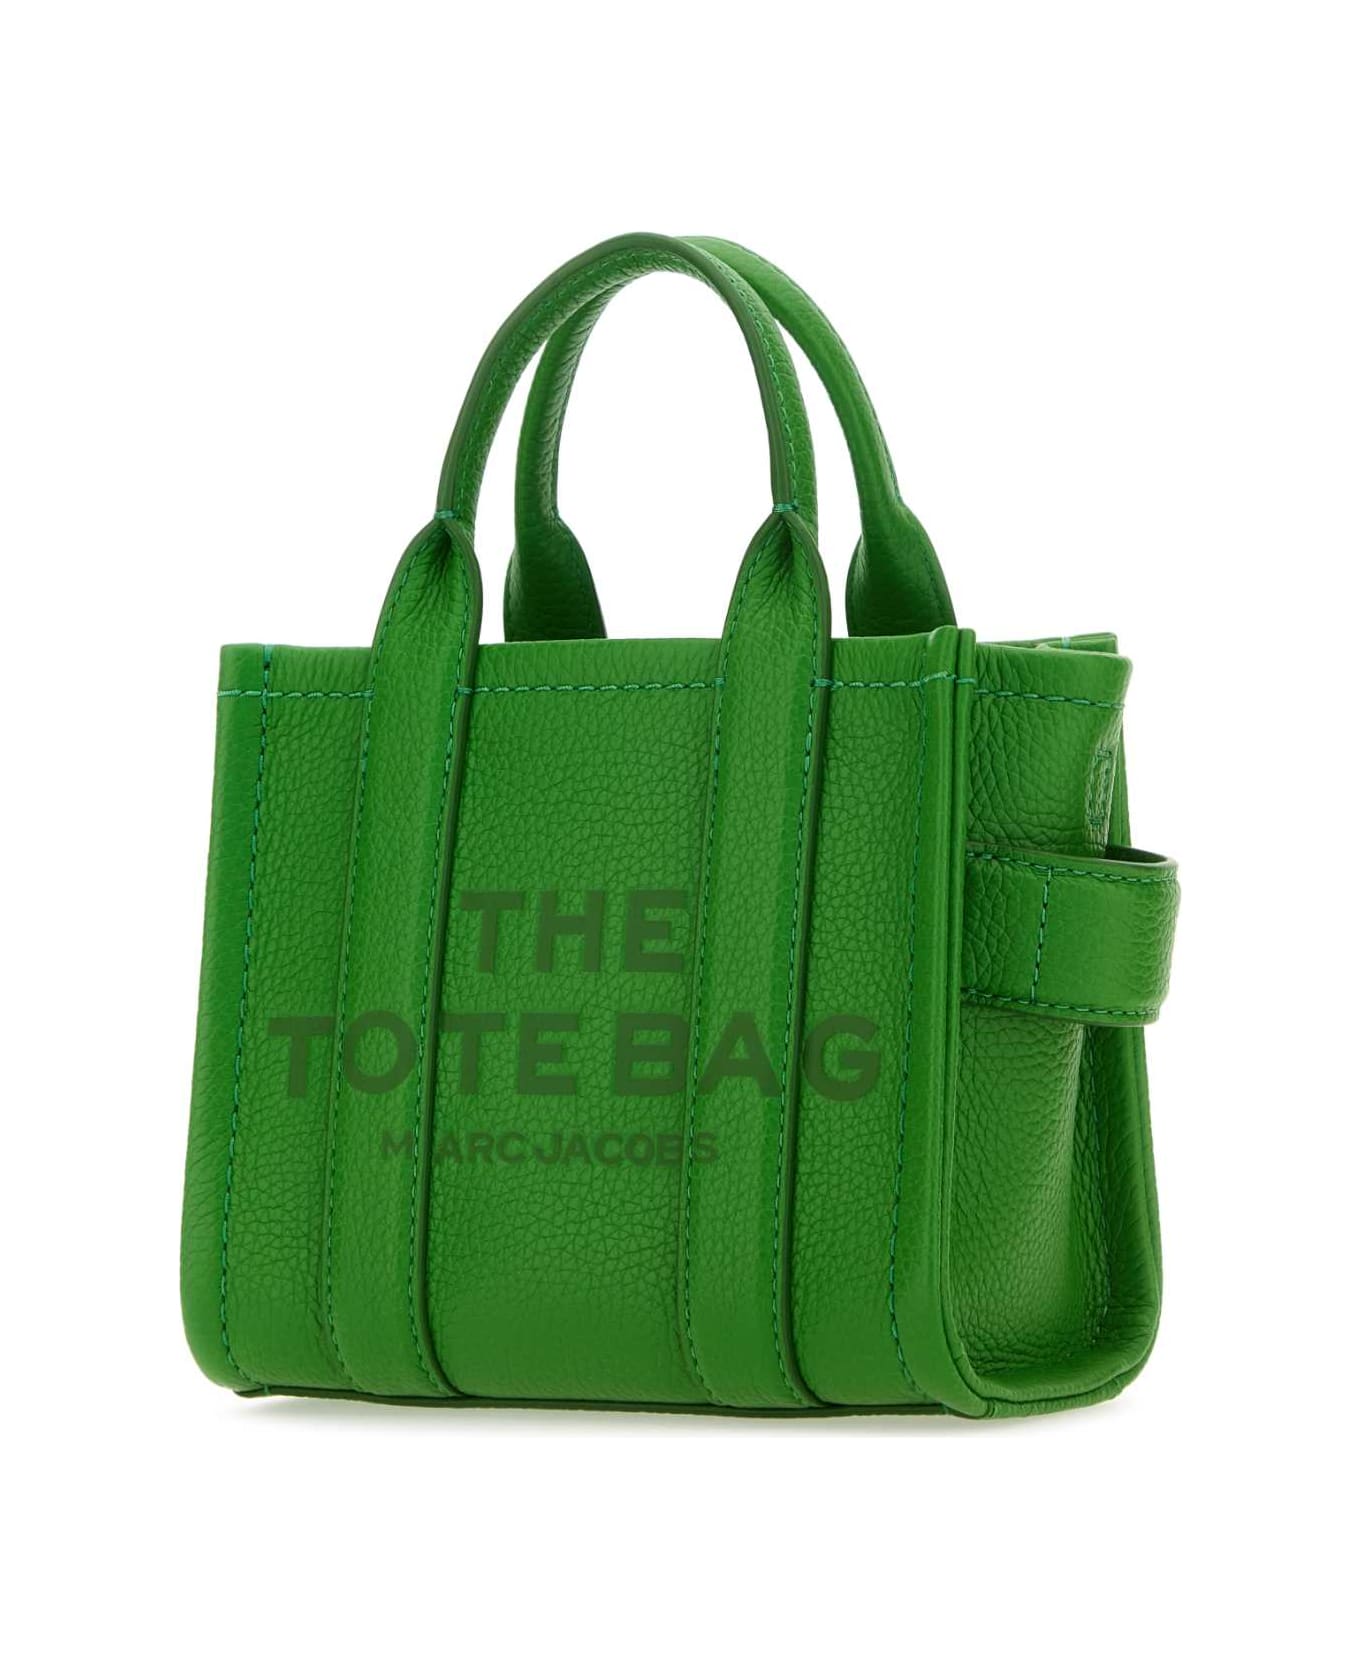 Marc Jacobs Green Leather Micro The Tote Bag Handbag - KIWI